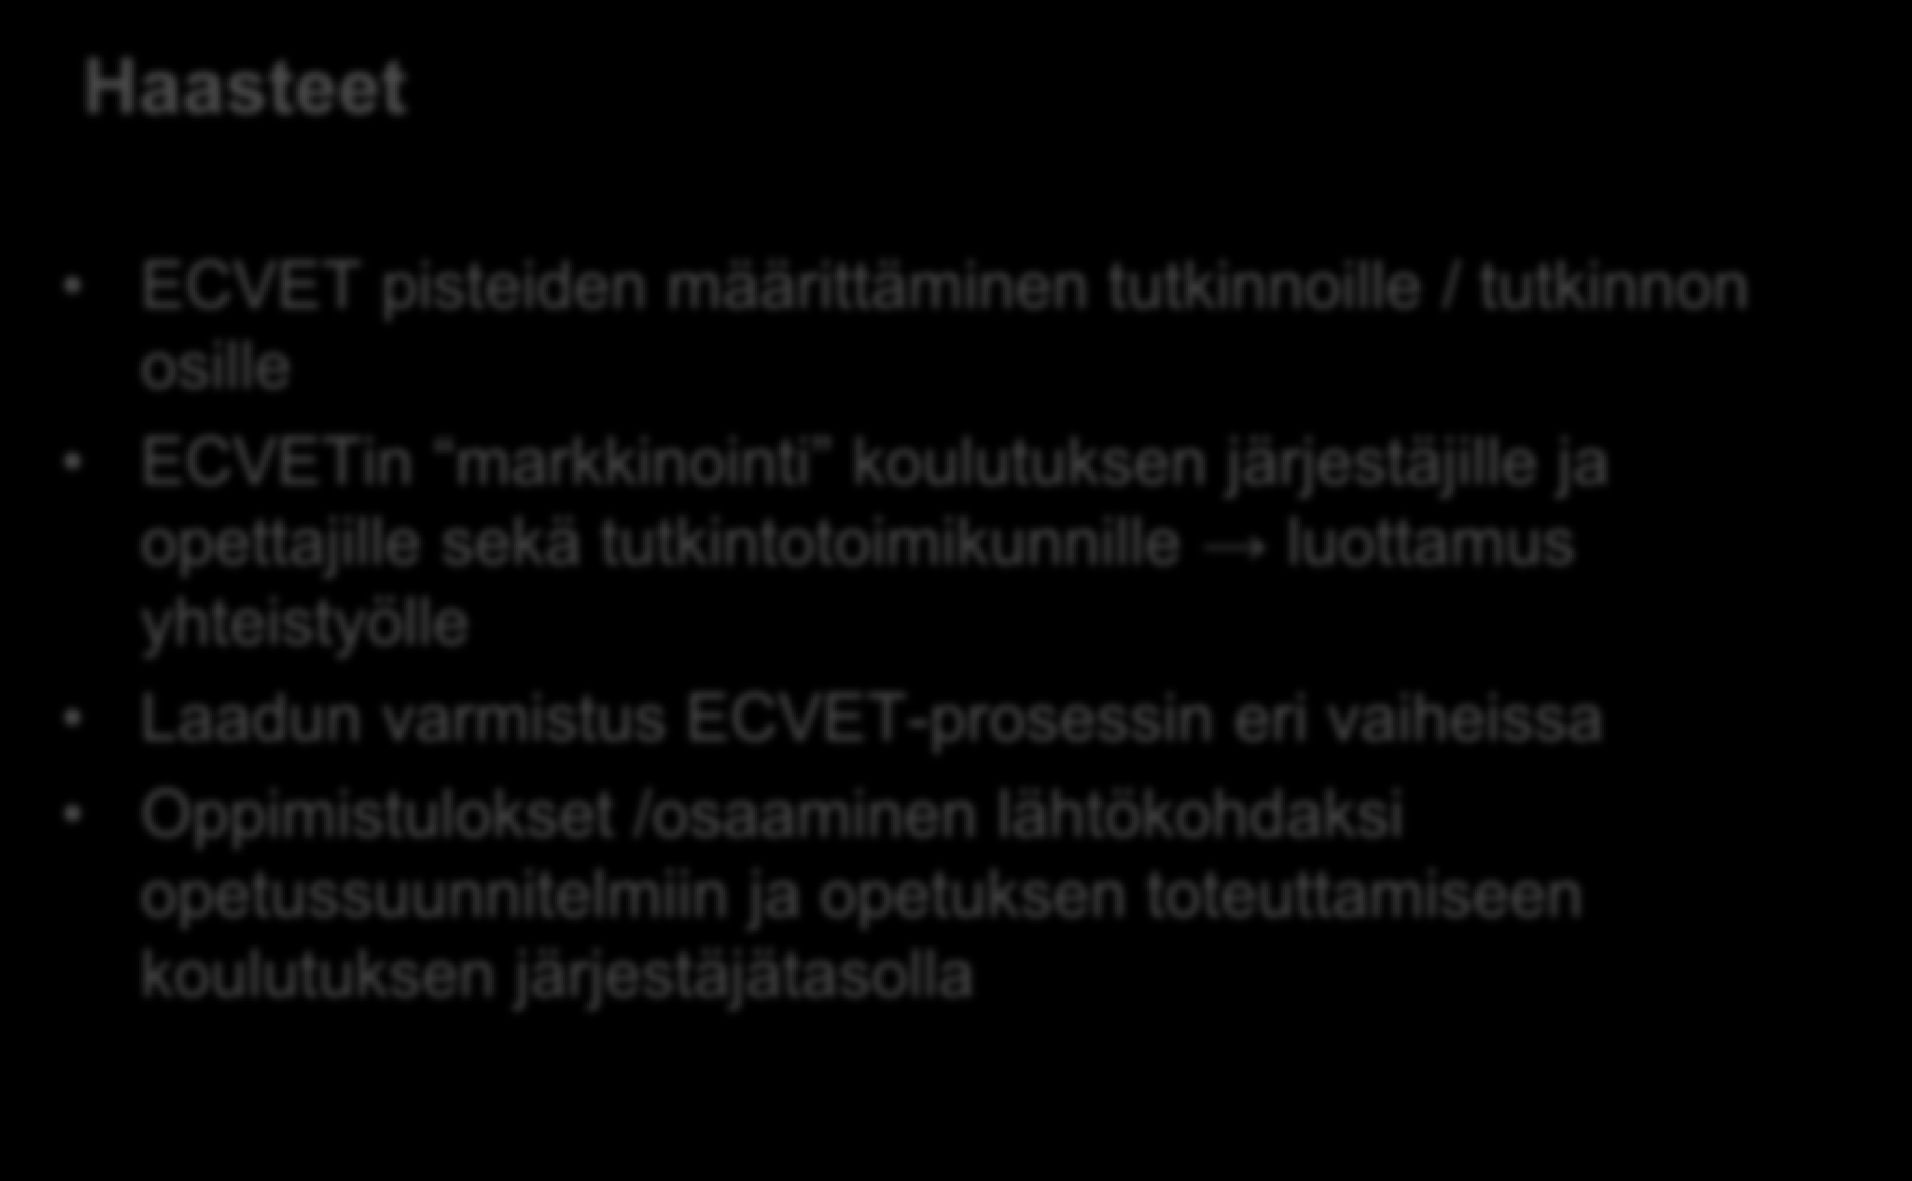 ECVETin käyttöönotto Suomessa Haasteet ECVET pisteiden määrittäminen tutkinnoille / tutkinnon osille ECVETin markkinointi koulutuksen järjestäjille ja opettajille sekä